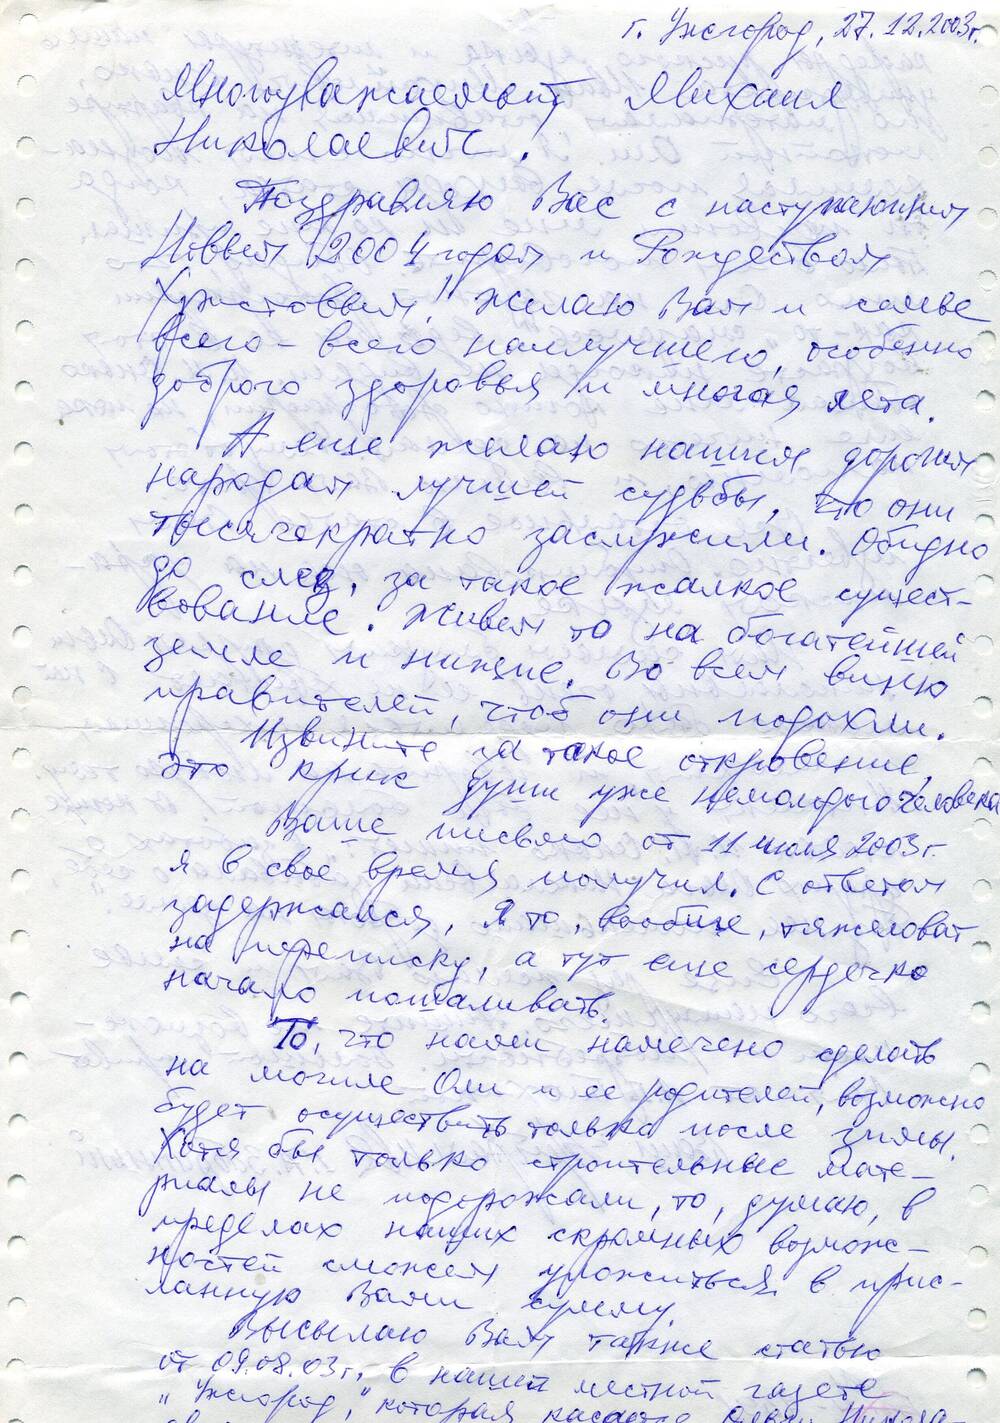 Письмо М.Алексееву от Забранного Г.А- друга О. Кондрашенко. Сообщение, что к весне будет воздвигнут памятник на могиле О. Кондрашенко и ее родителей